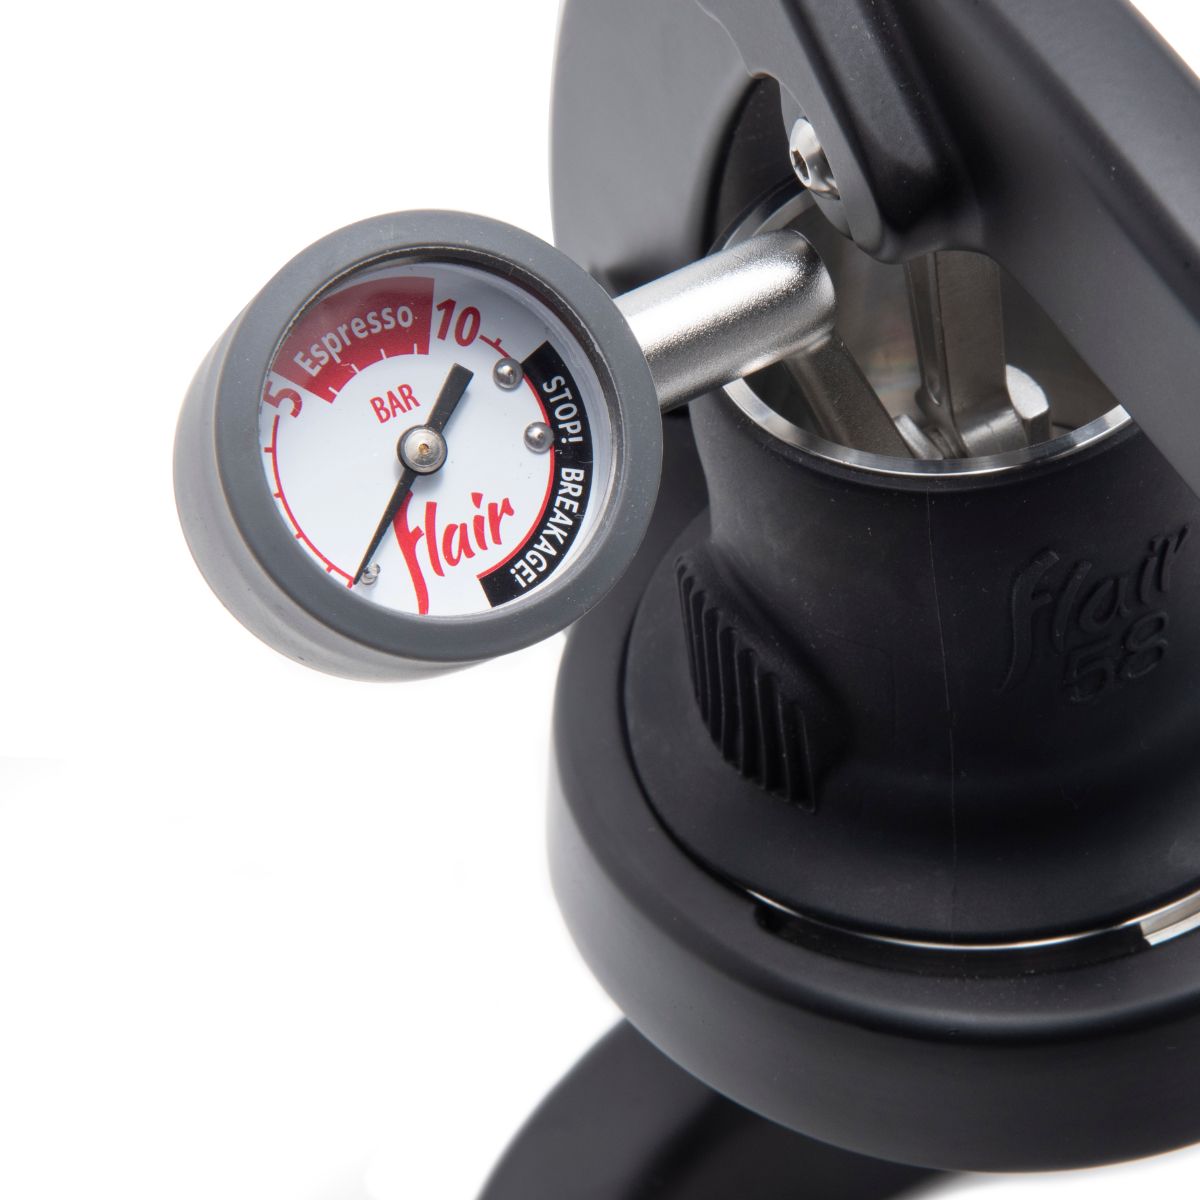 Flair 58 Espresso Maker pressure gauge